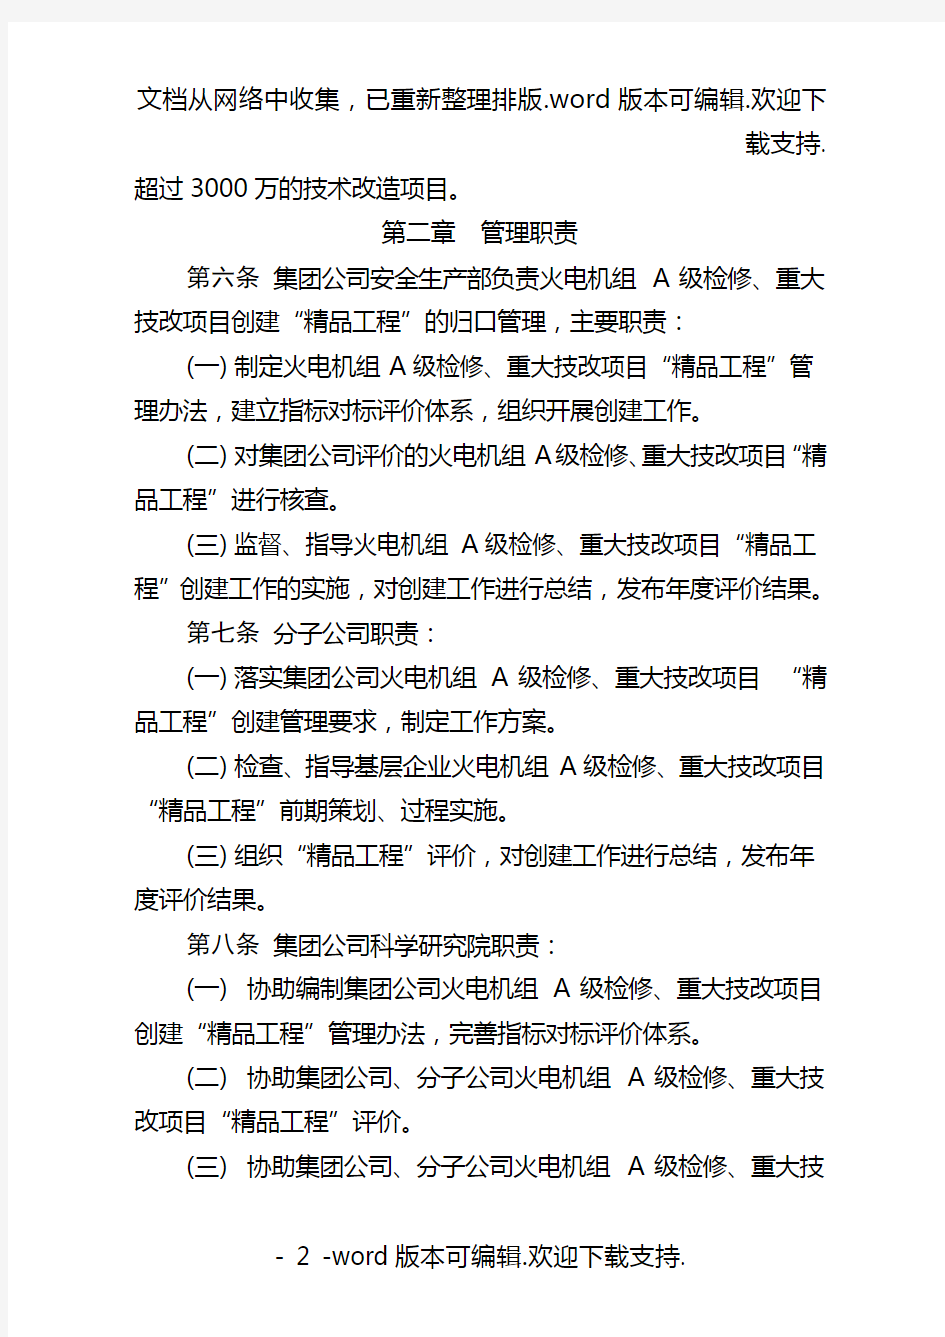 中国大唐集团公司火电机组A级检修、重大技改项目创建精品工程管理办法(试行)